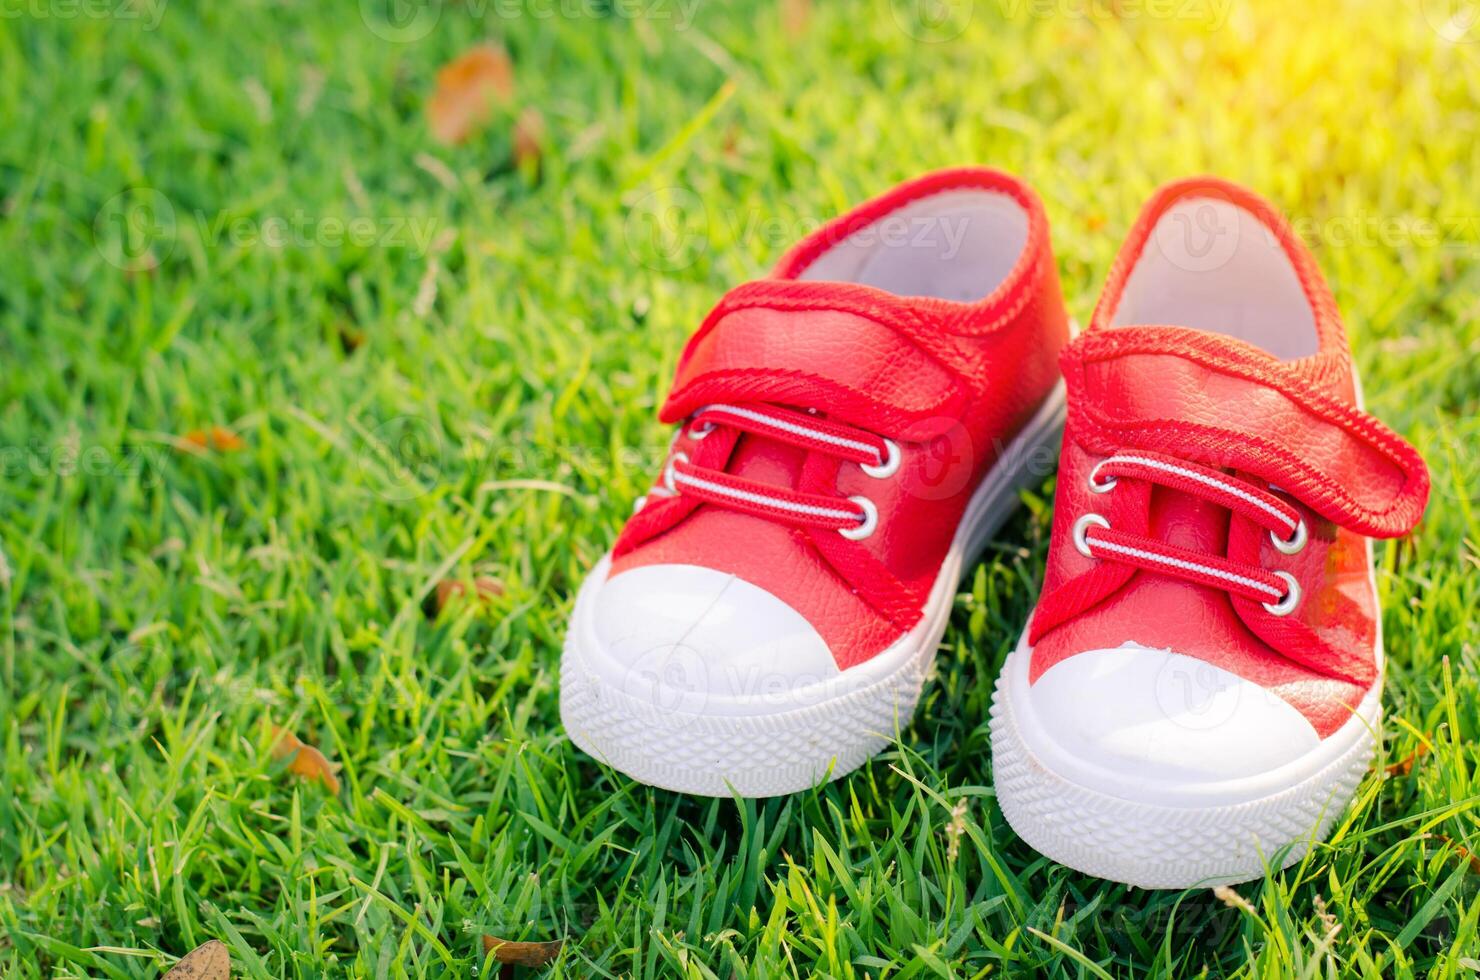 rot Schuhe zum Kinder auf Grün Gras Fußboden foto